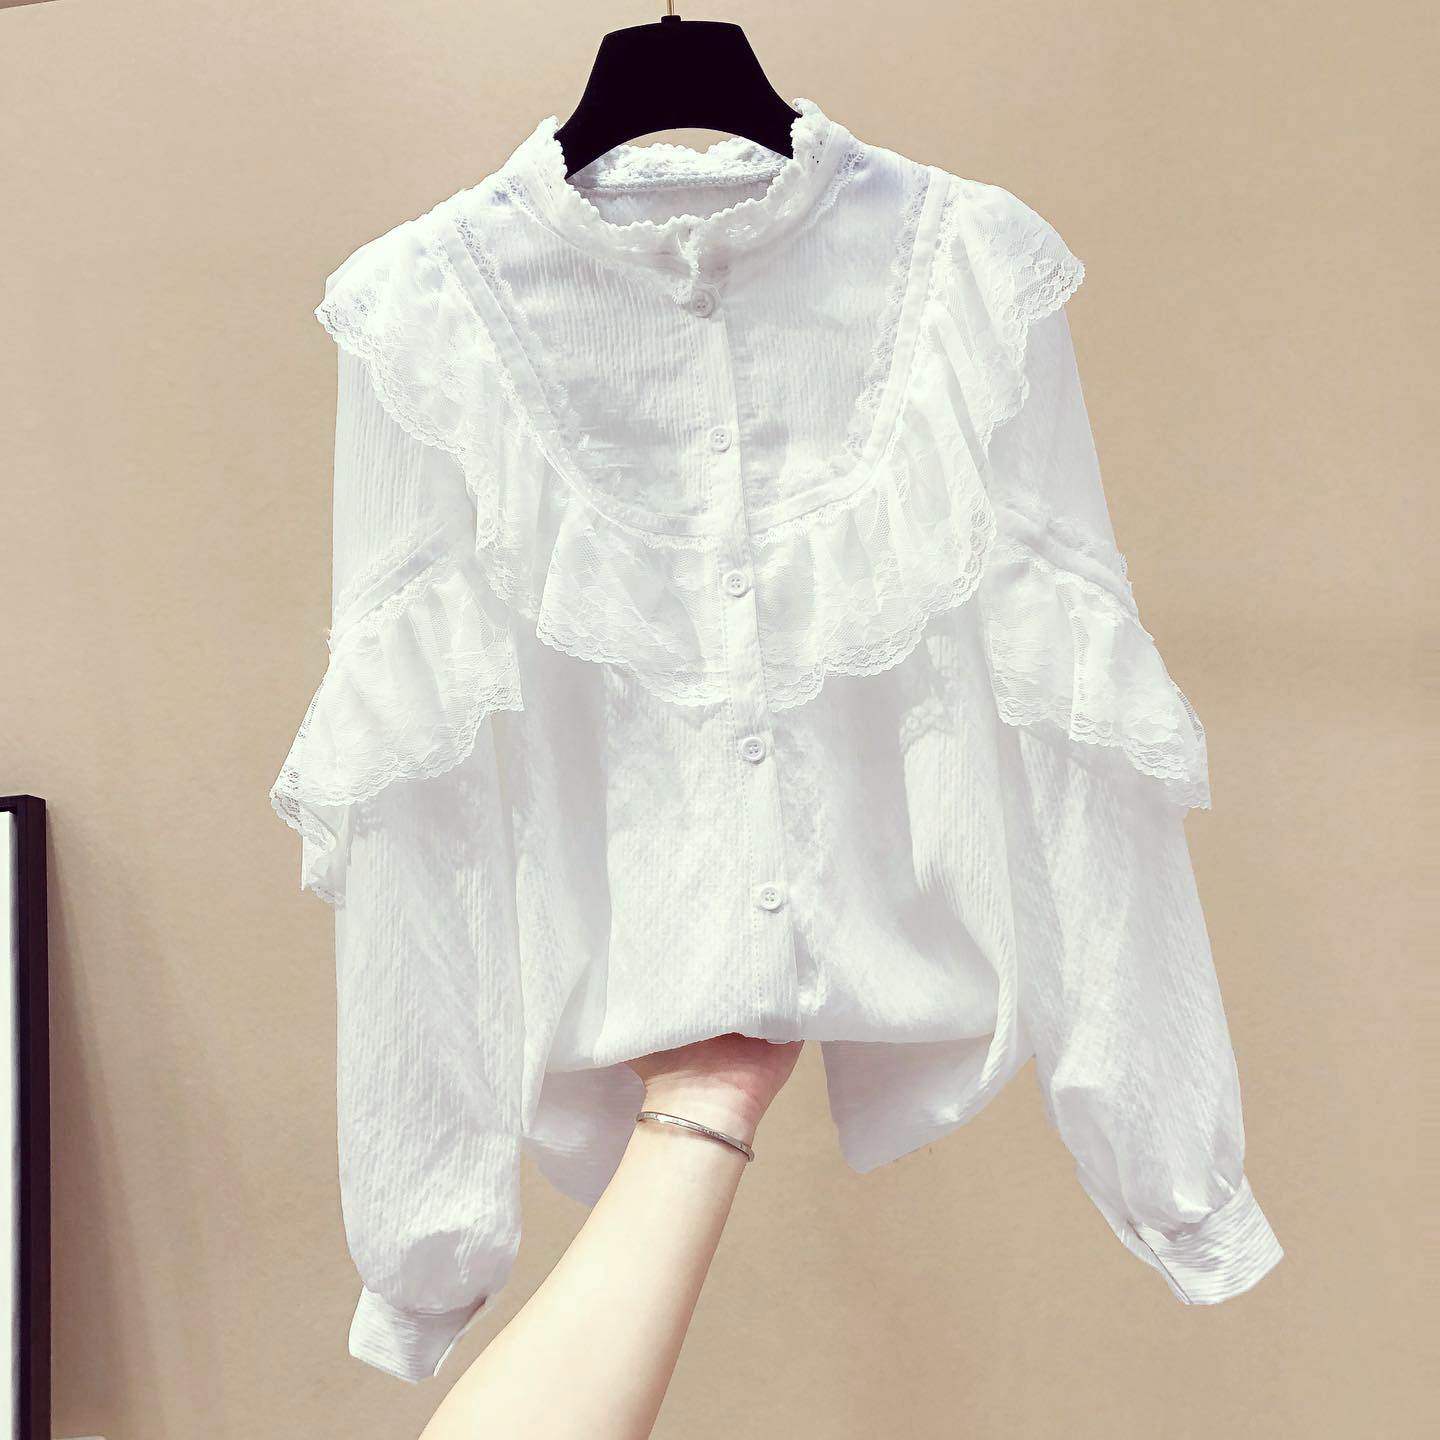 白色雪纺衬衫女春装2019新款韩版荷叶边衬衣设计感小众很仙的上衣